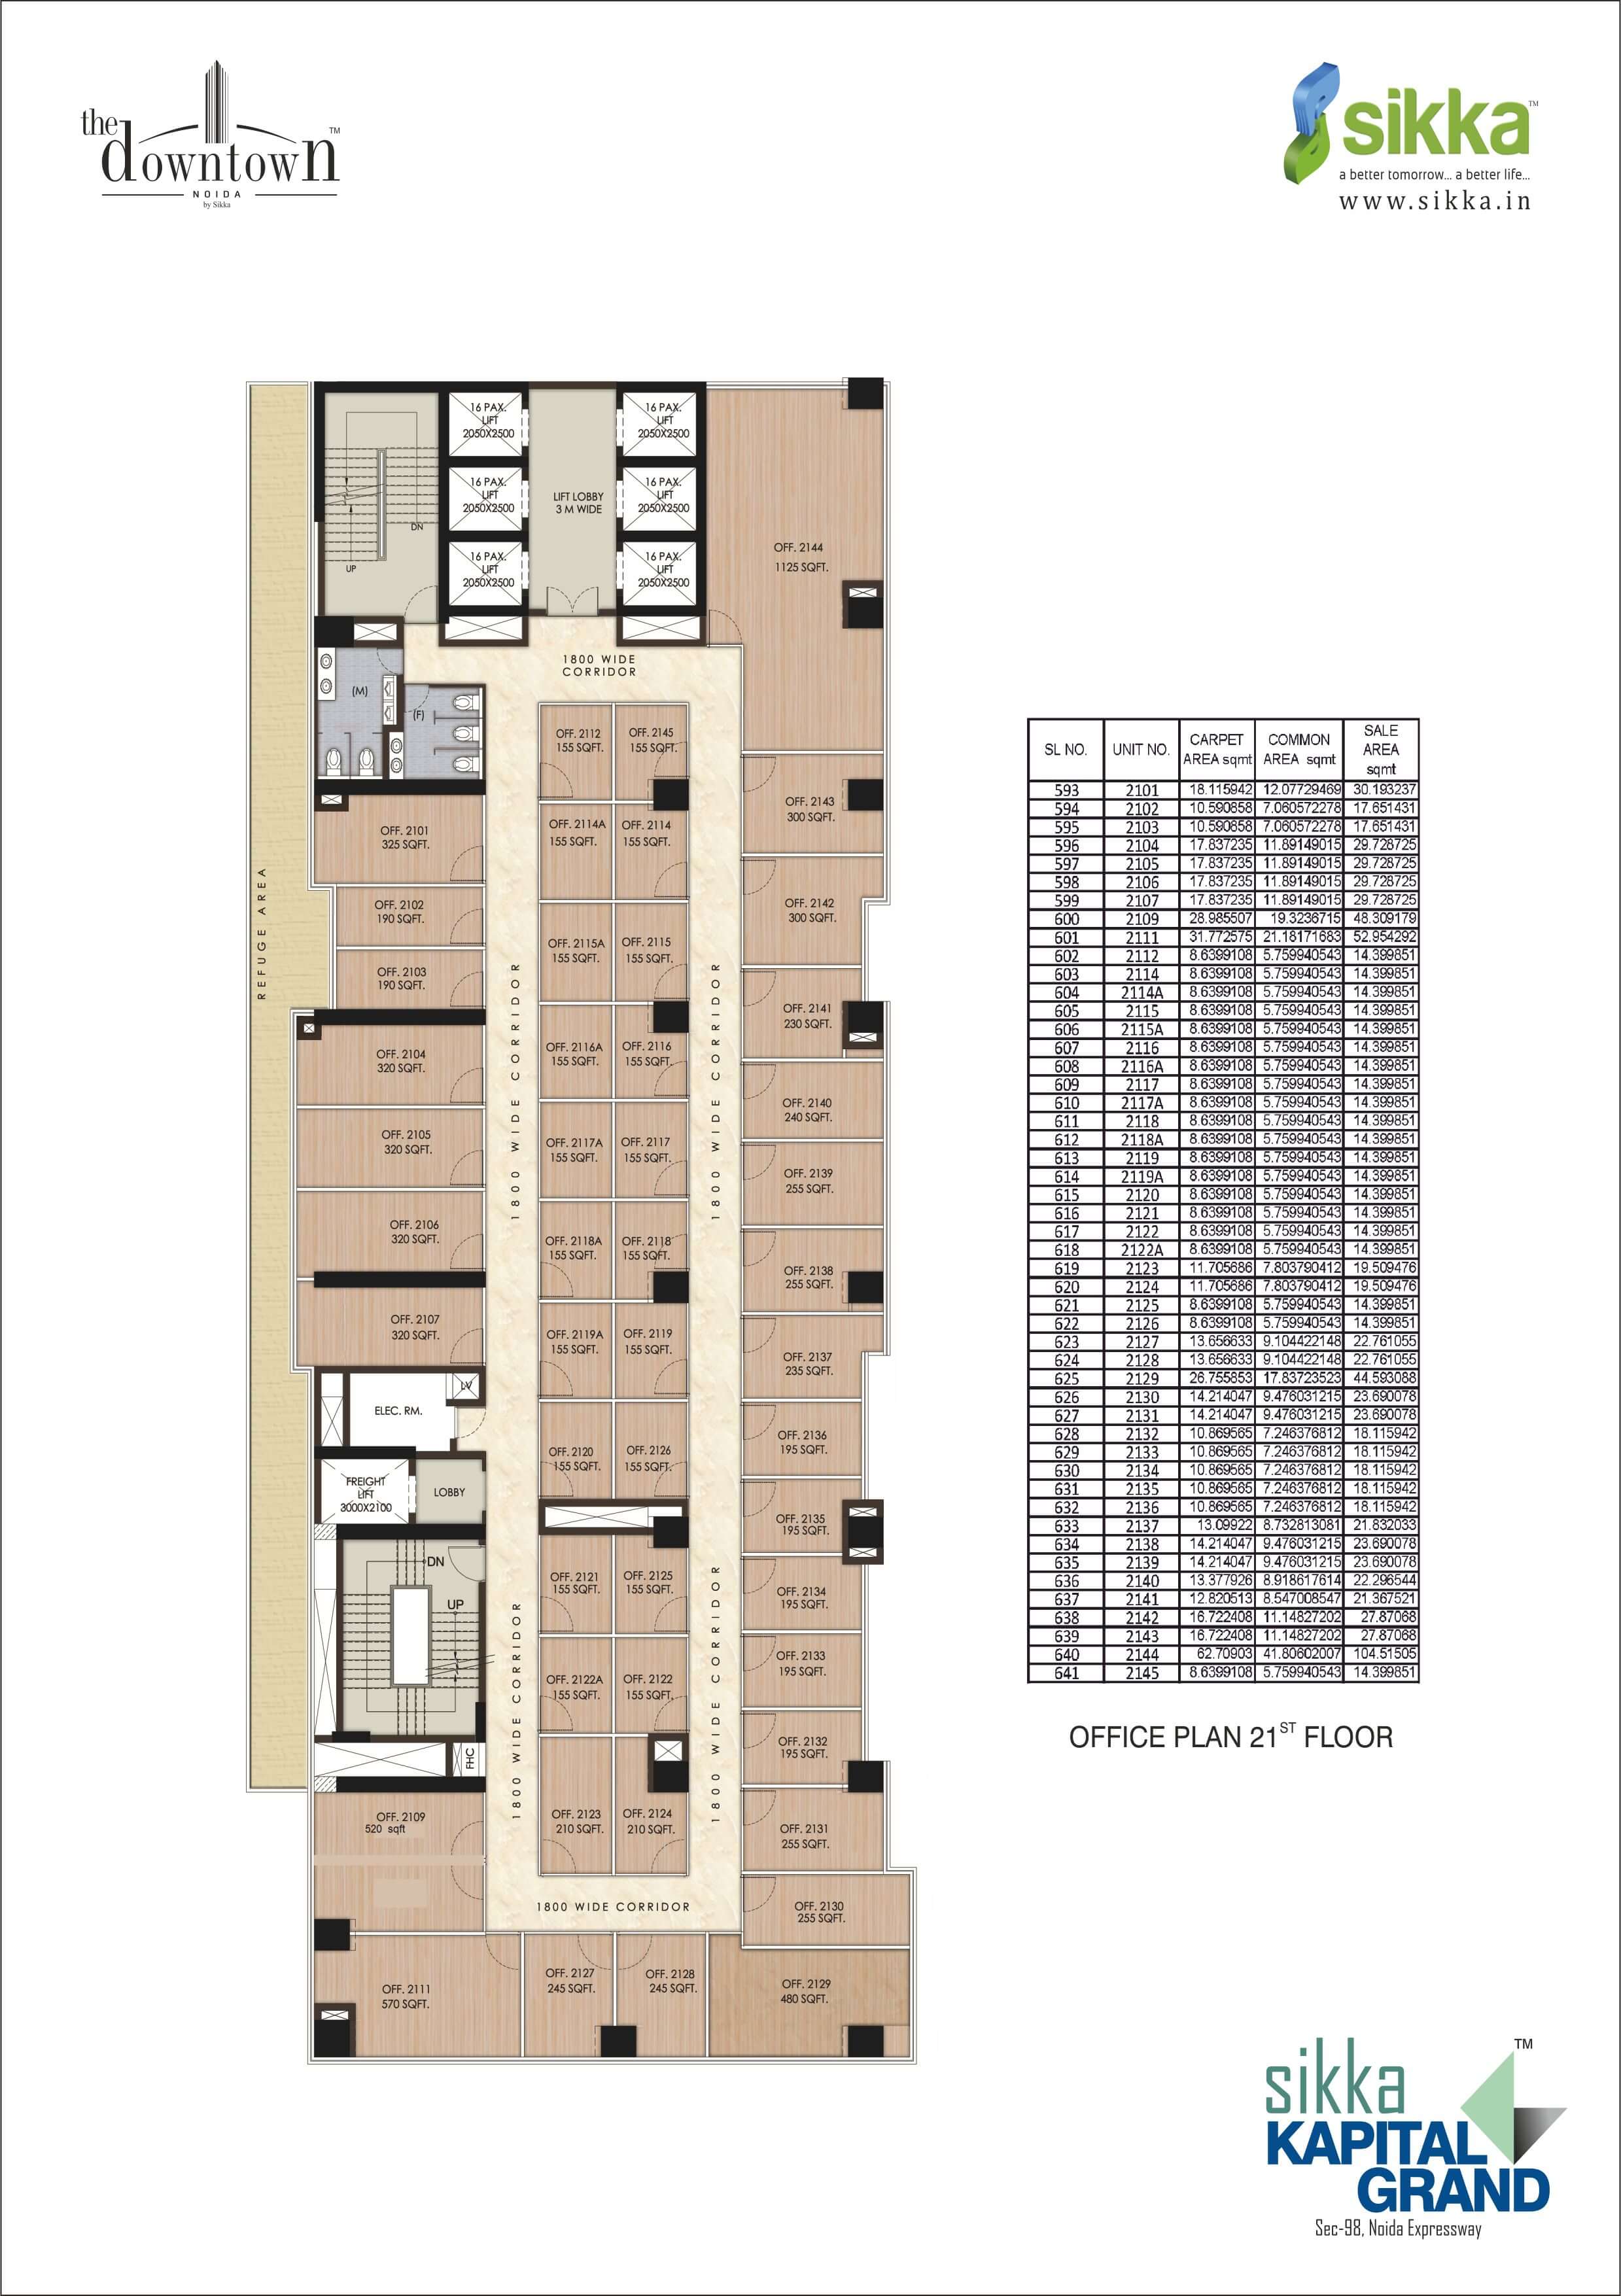 Kapital Grand - Office Plan 21st Floor